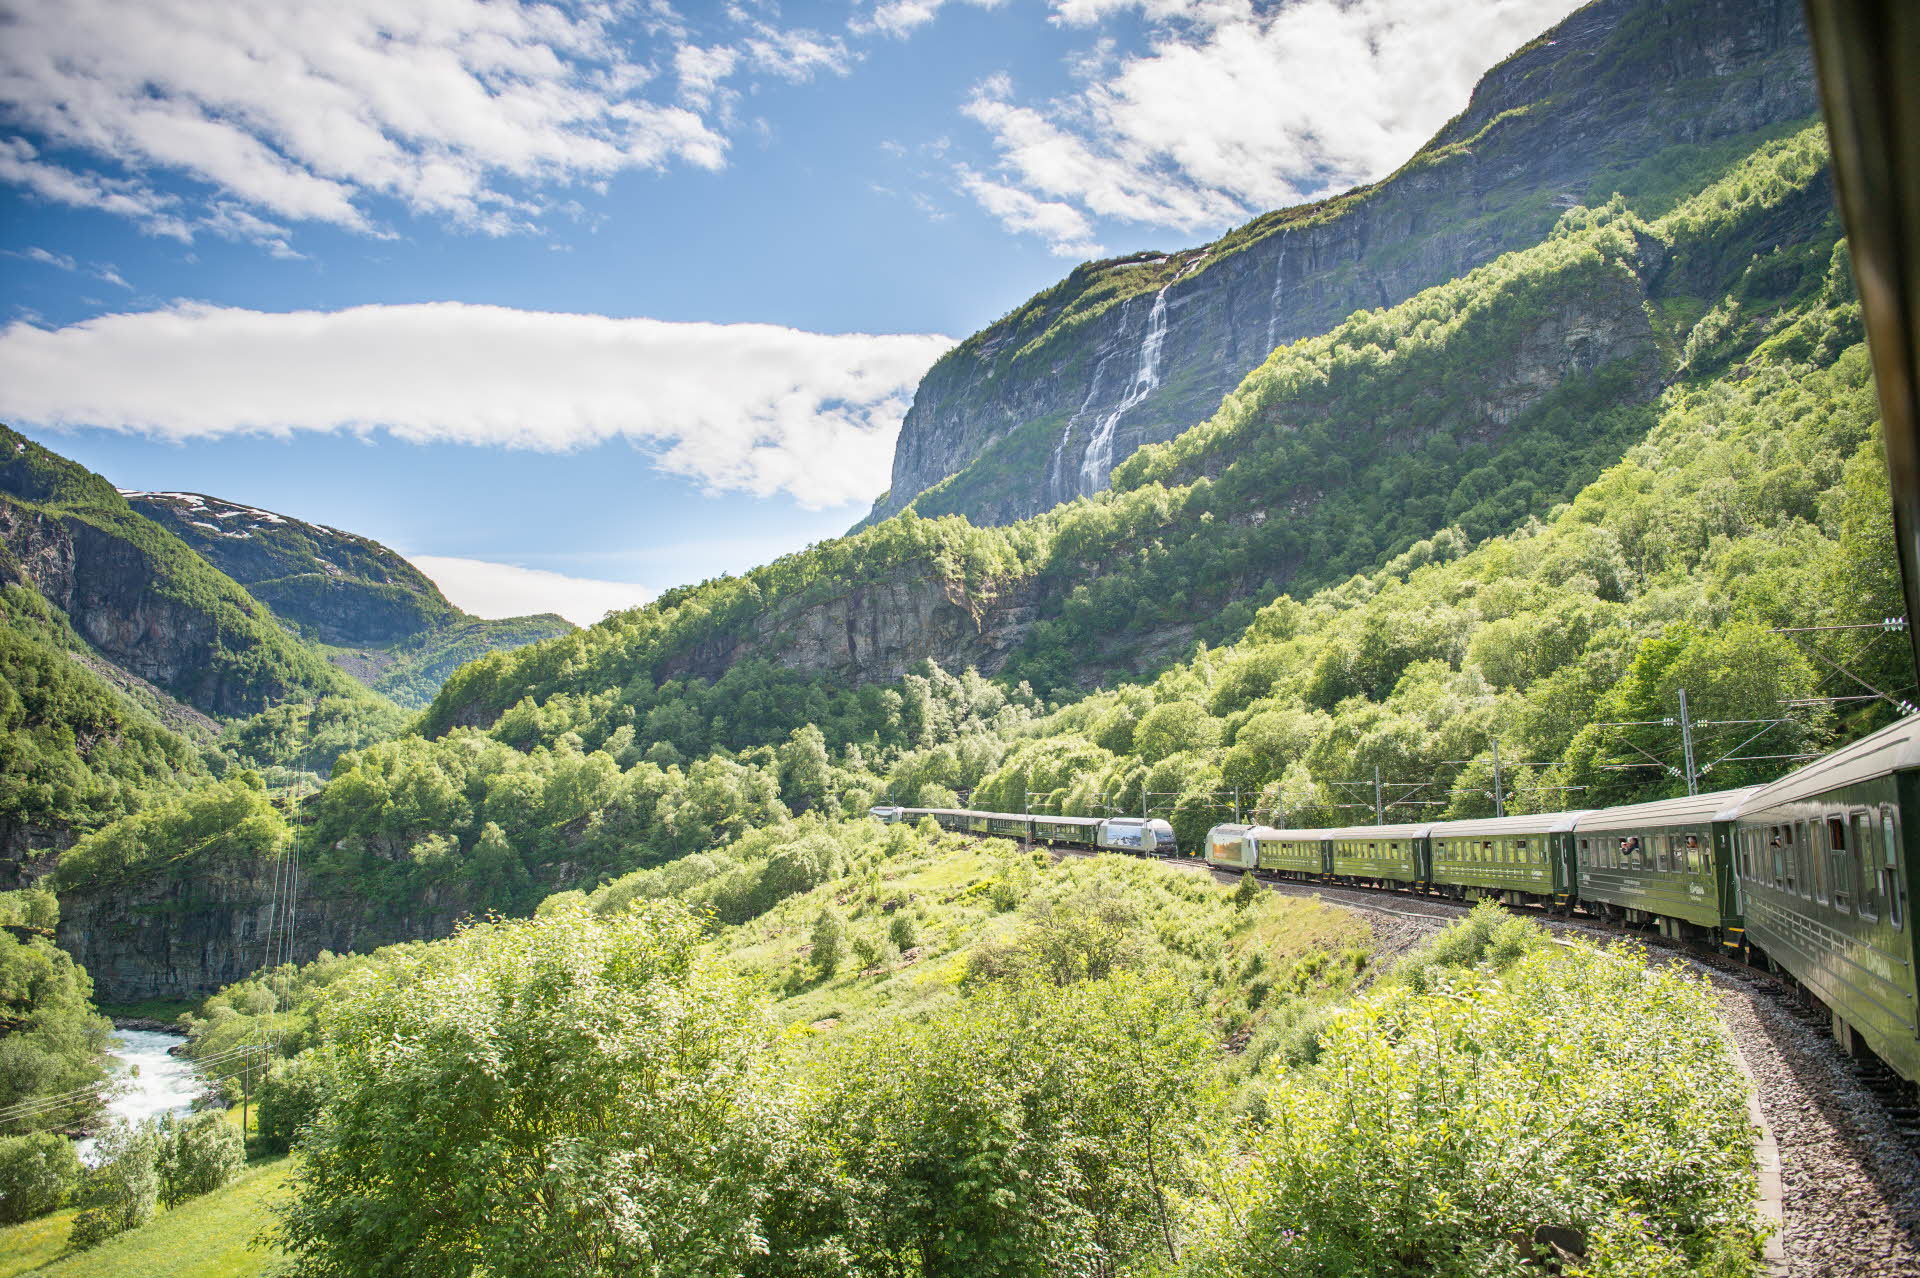 El valle de Flåm y dos trenes encontrándose, vistos desde la ventana de un tren. Unas laderas verdes, el cielo azul y una cascada. 